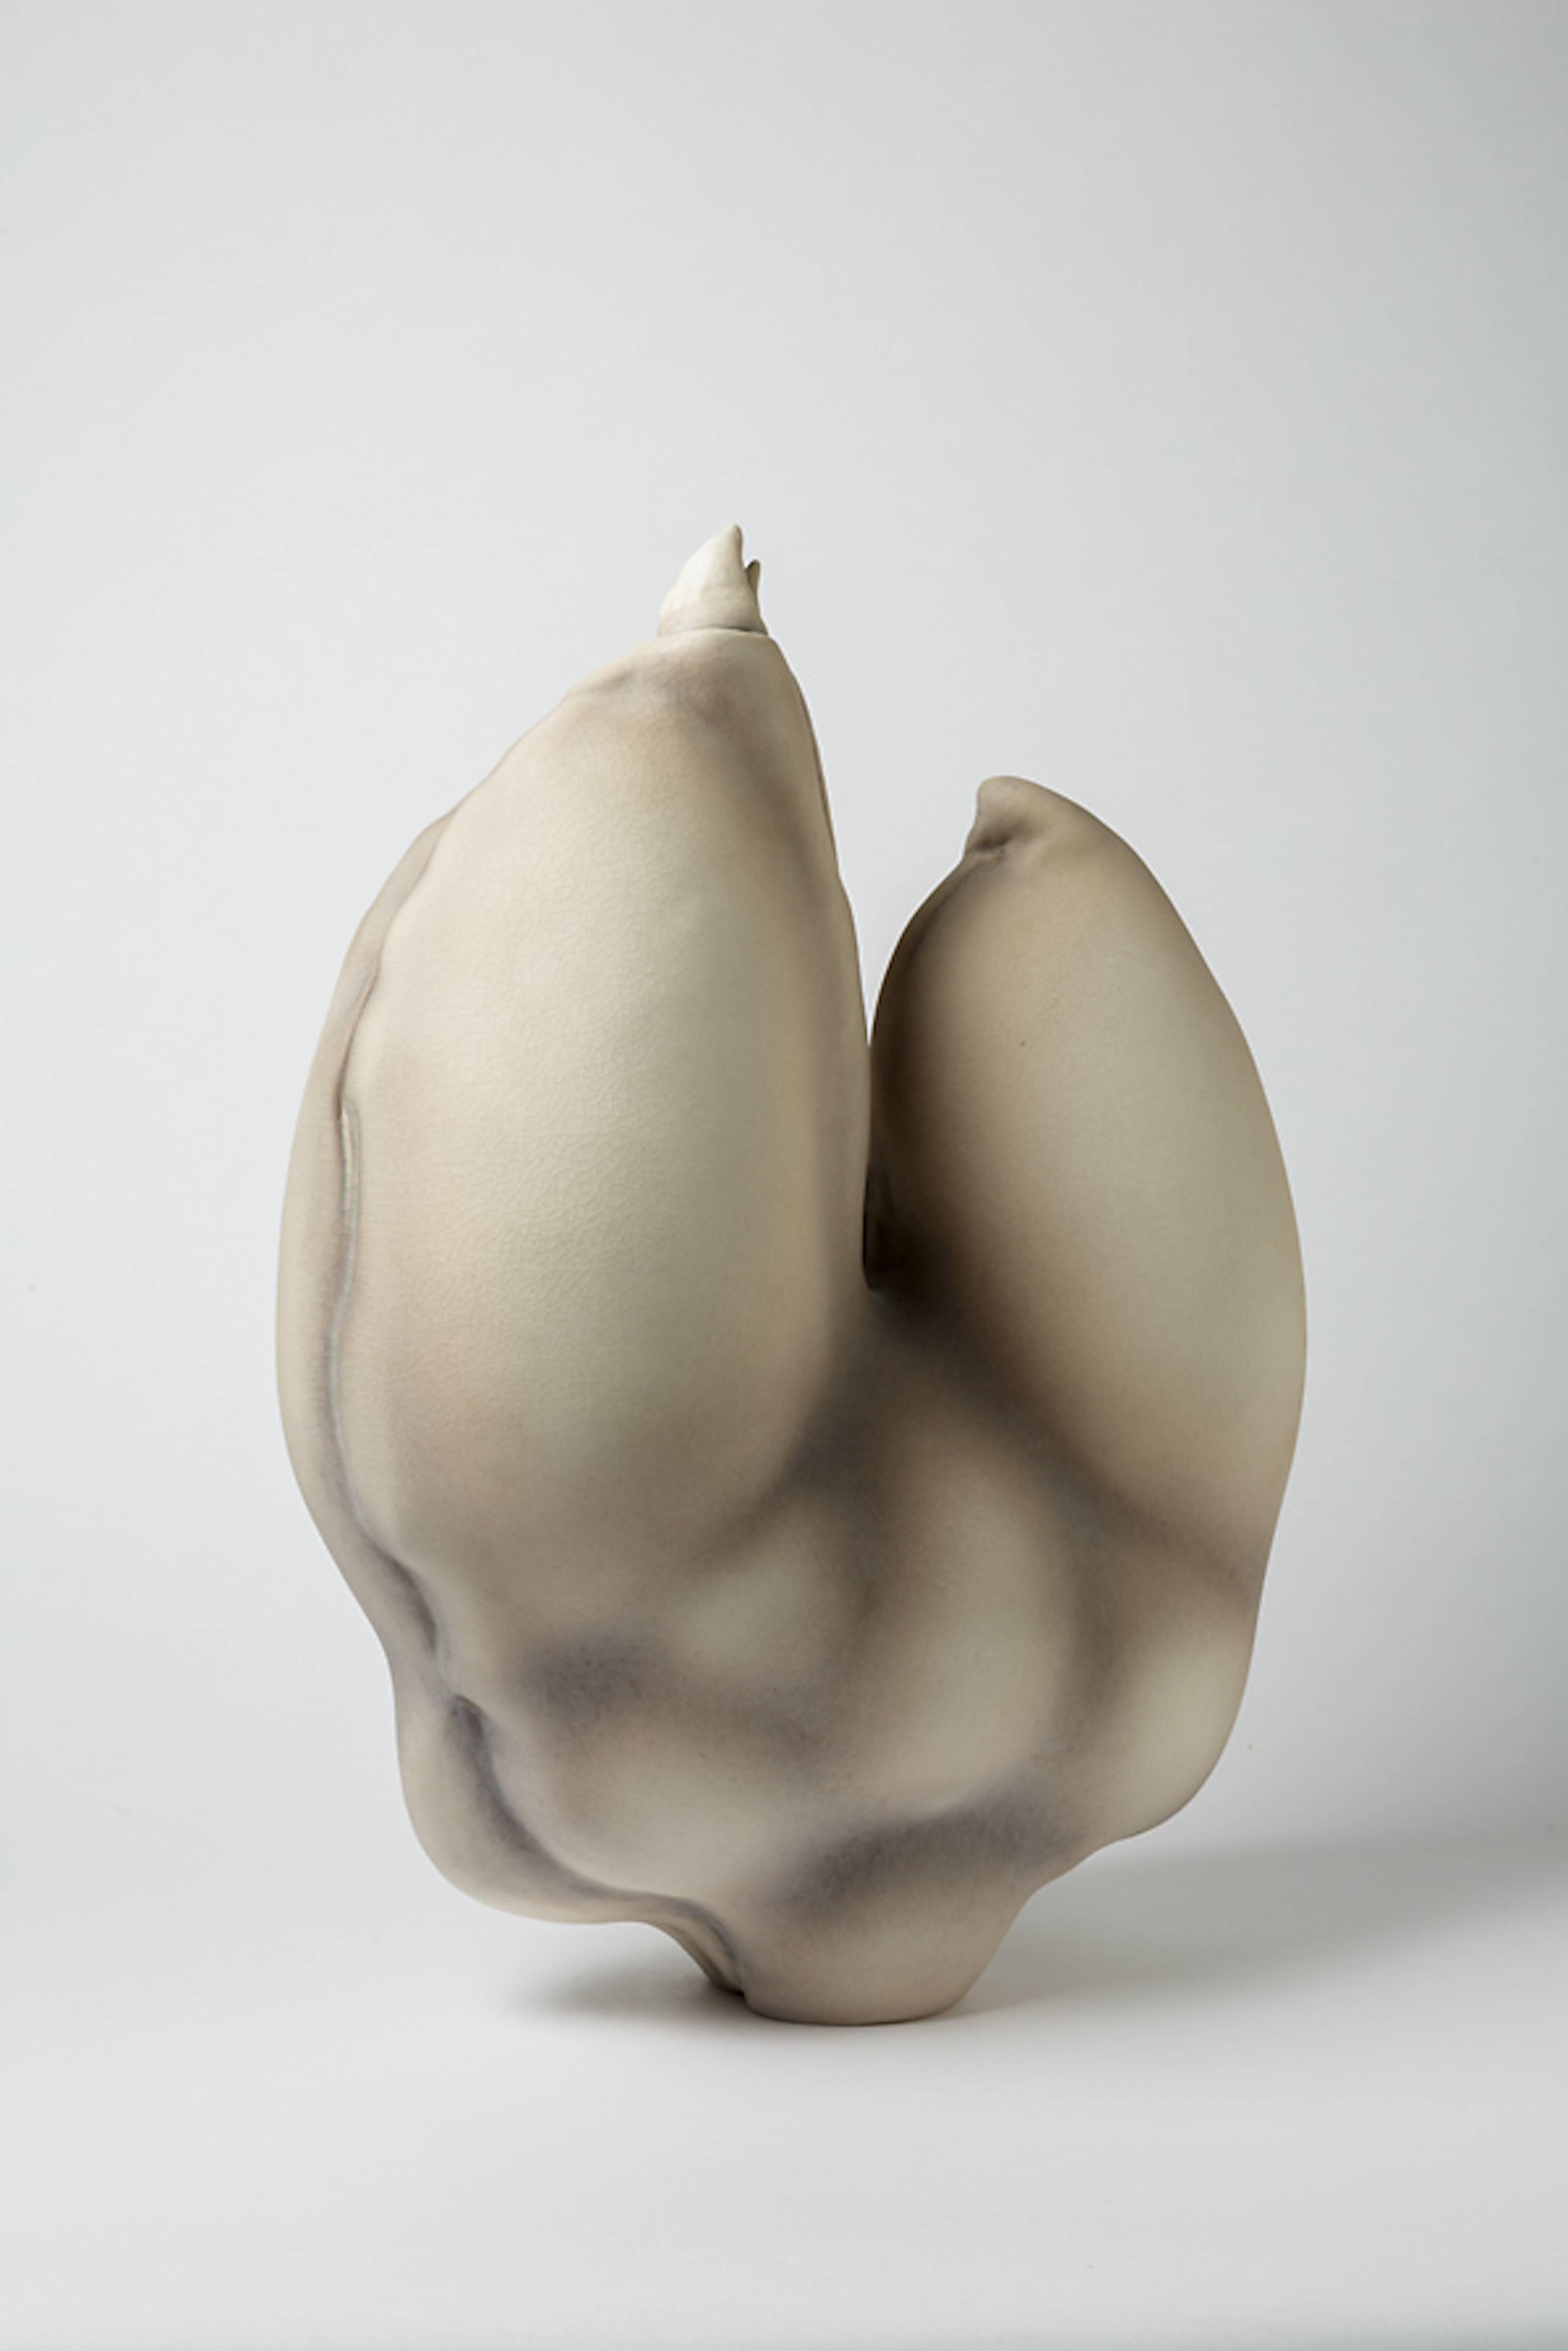 Molded Porcelain Sculpture by Wayne Fischer, circa 2016